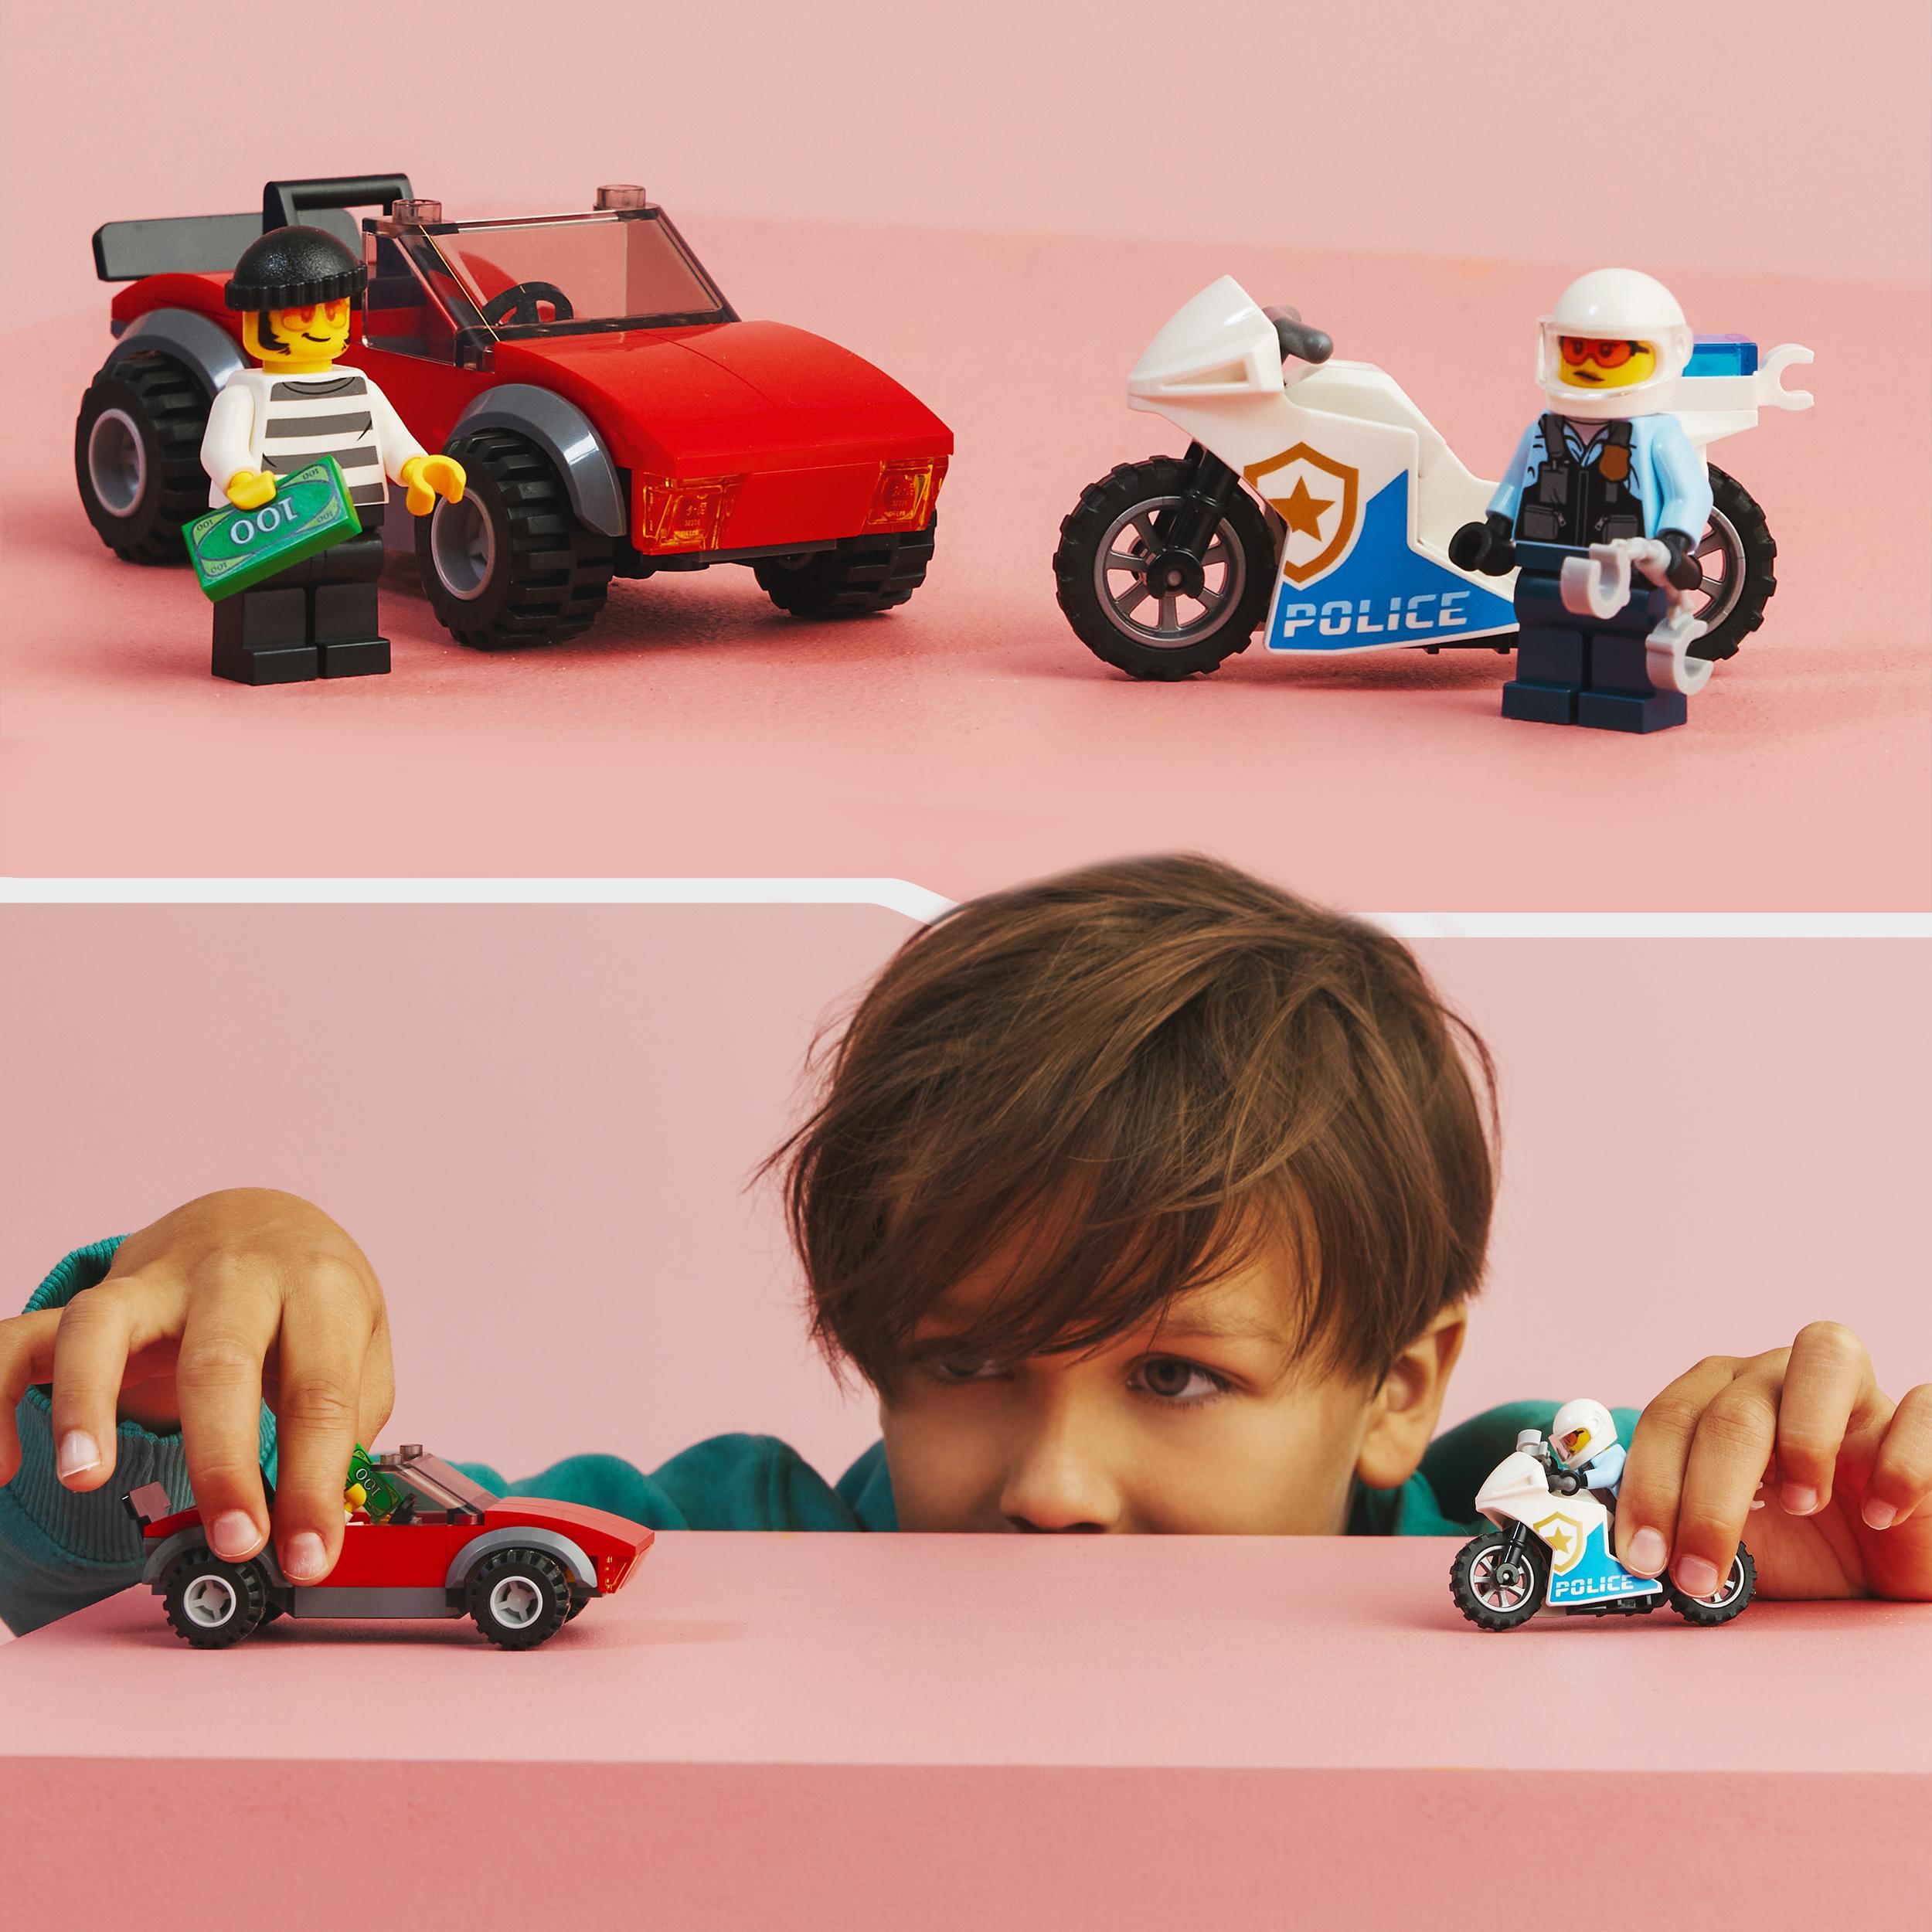 Lego city 60392 inseguimento sulla moto della polizia giocattolo con modelli di auto e 2 minifigure, giochi per bambini 5+ - LEGO CITY